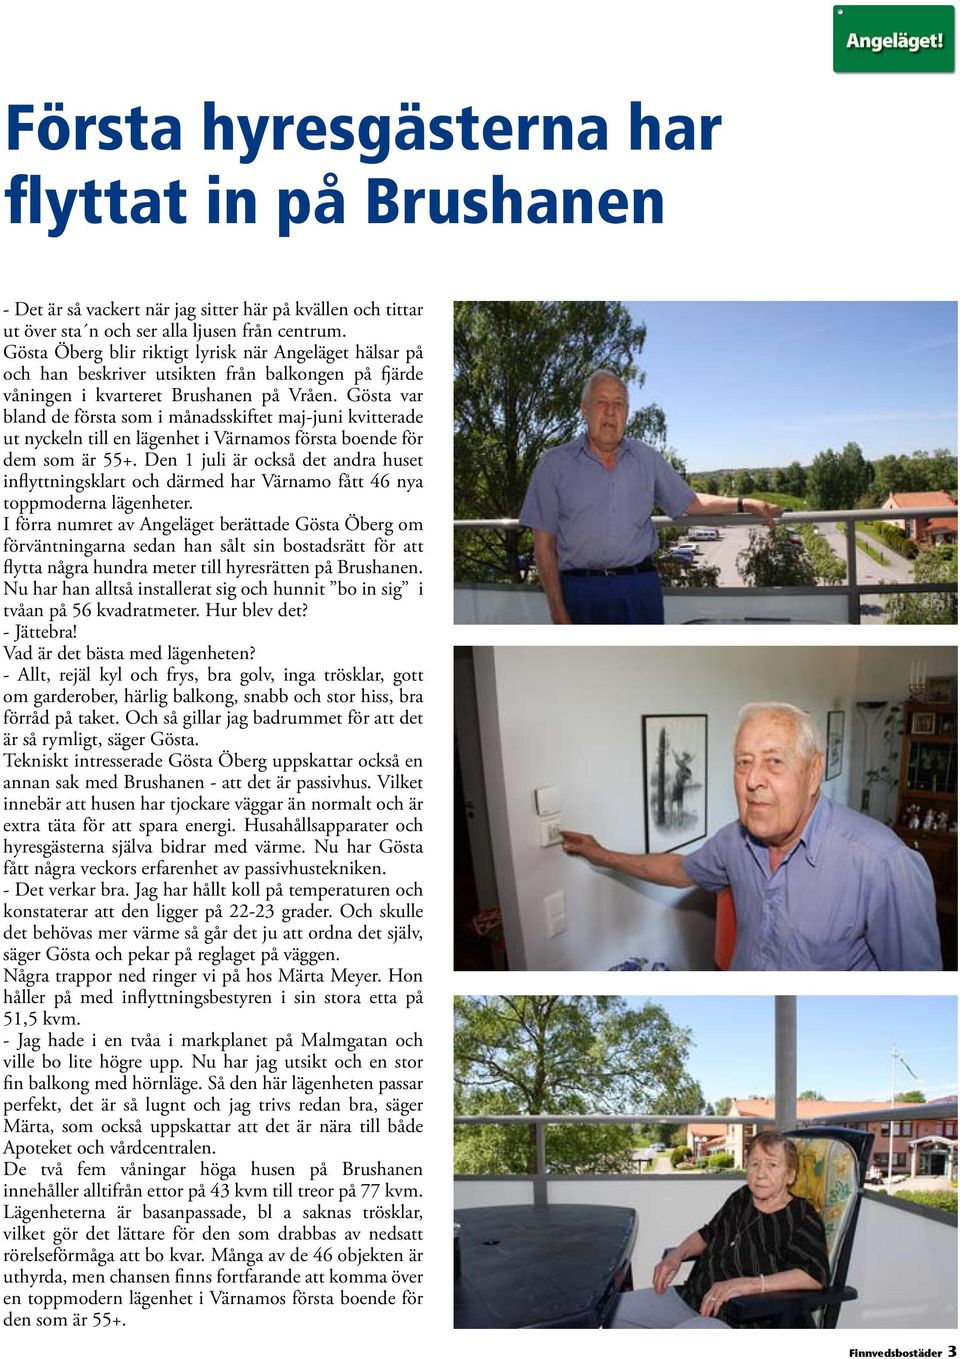 Gösta var bland de första som i månadsskiftet maj-juni kvitterade ut nyckeln till en lägenhet i Värnamos första boende för dem som är 55+.